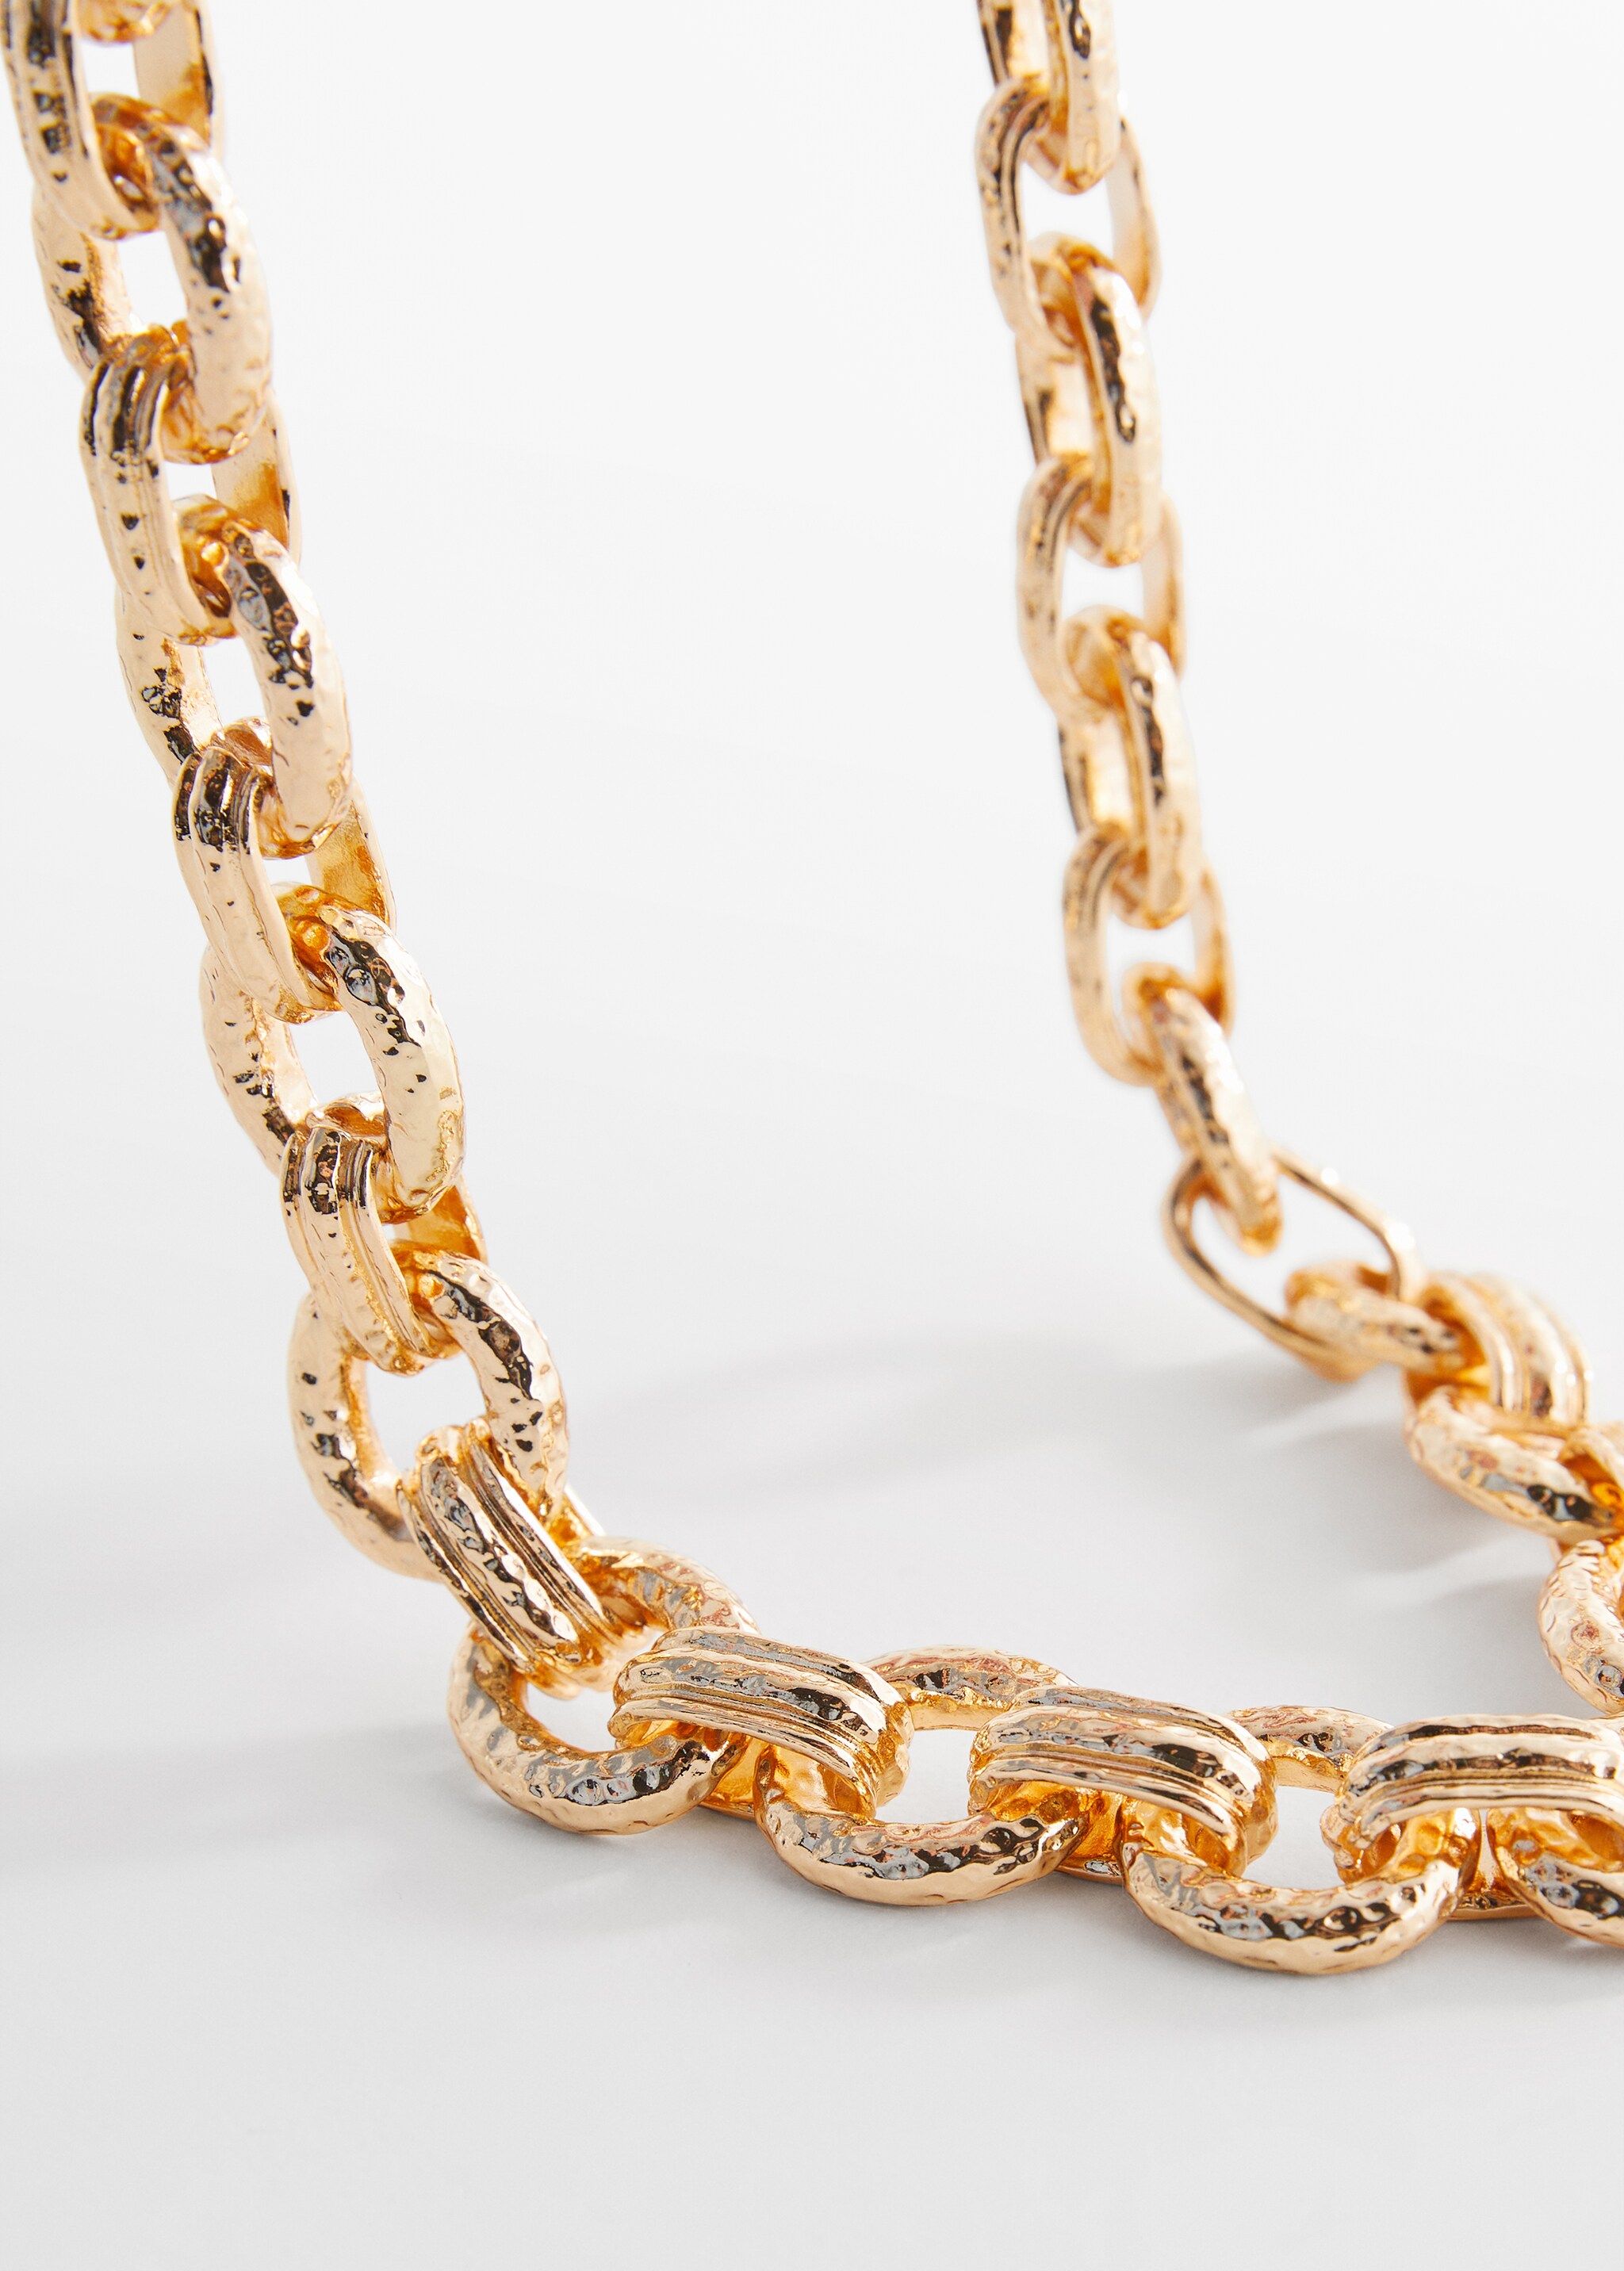 Textured chain necklace - Medium plane